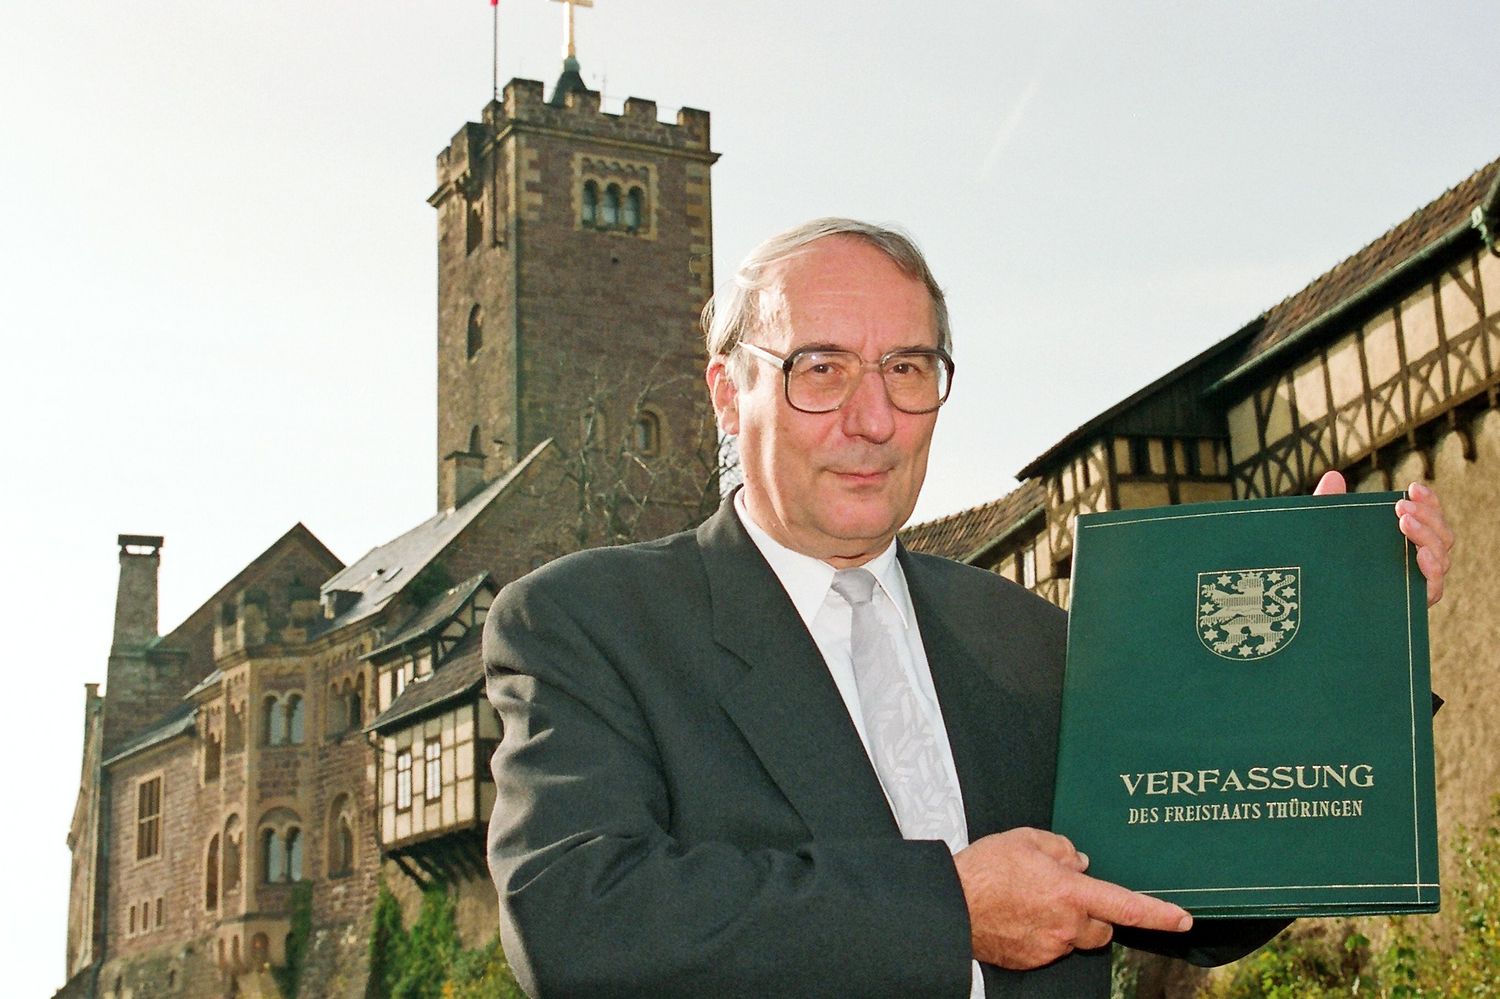 Landtagspräsident Dr. Gottfried Müller mit der Verfassung des Freistaats Thüringer mit der Wartburg im Hintergrund